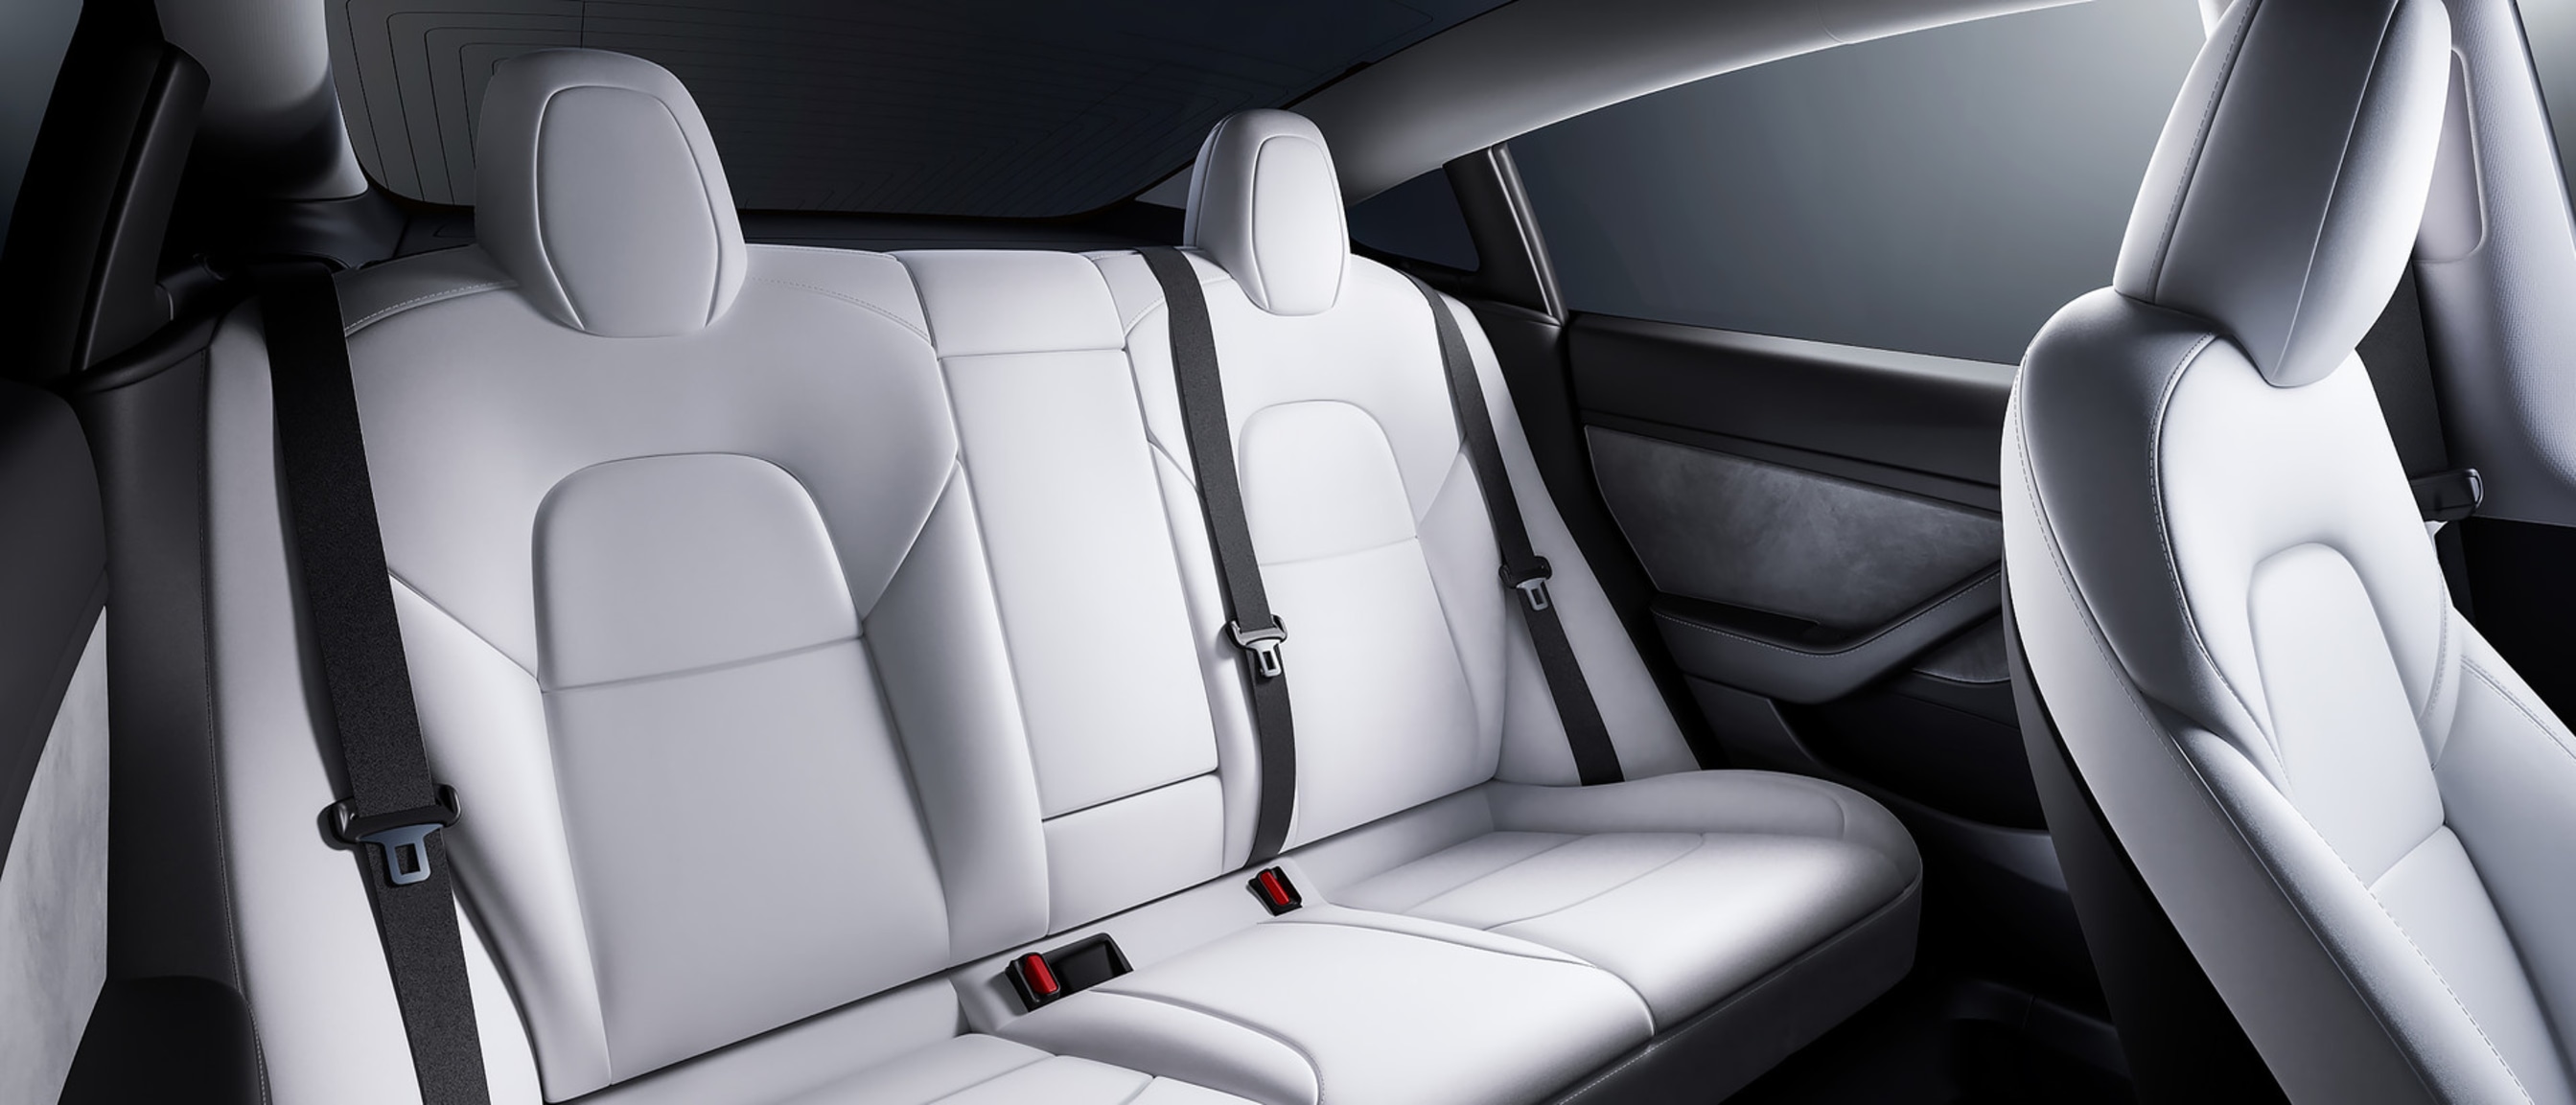 Vista del espacioso asiento trasero de un Model 3 con interior blanco